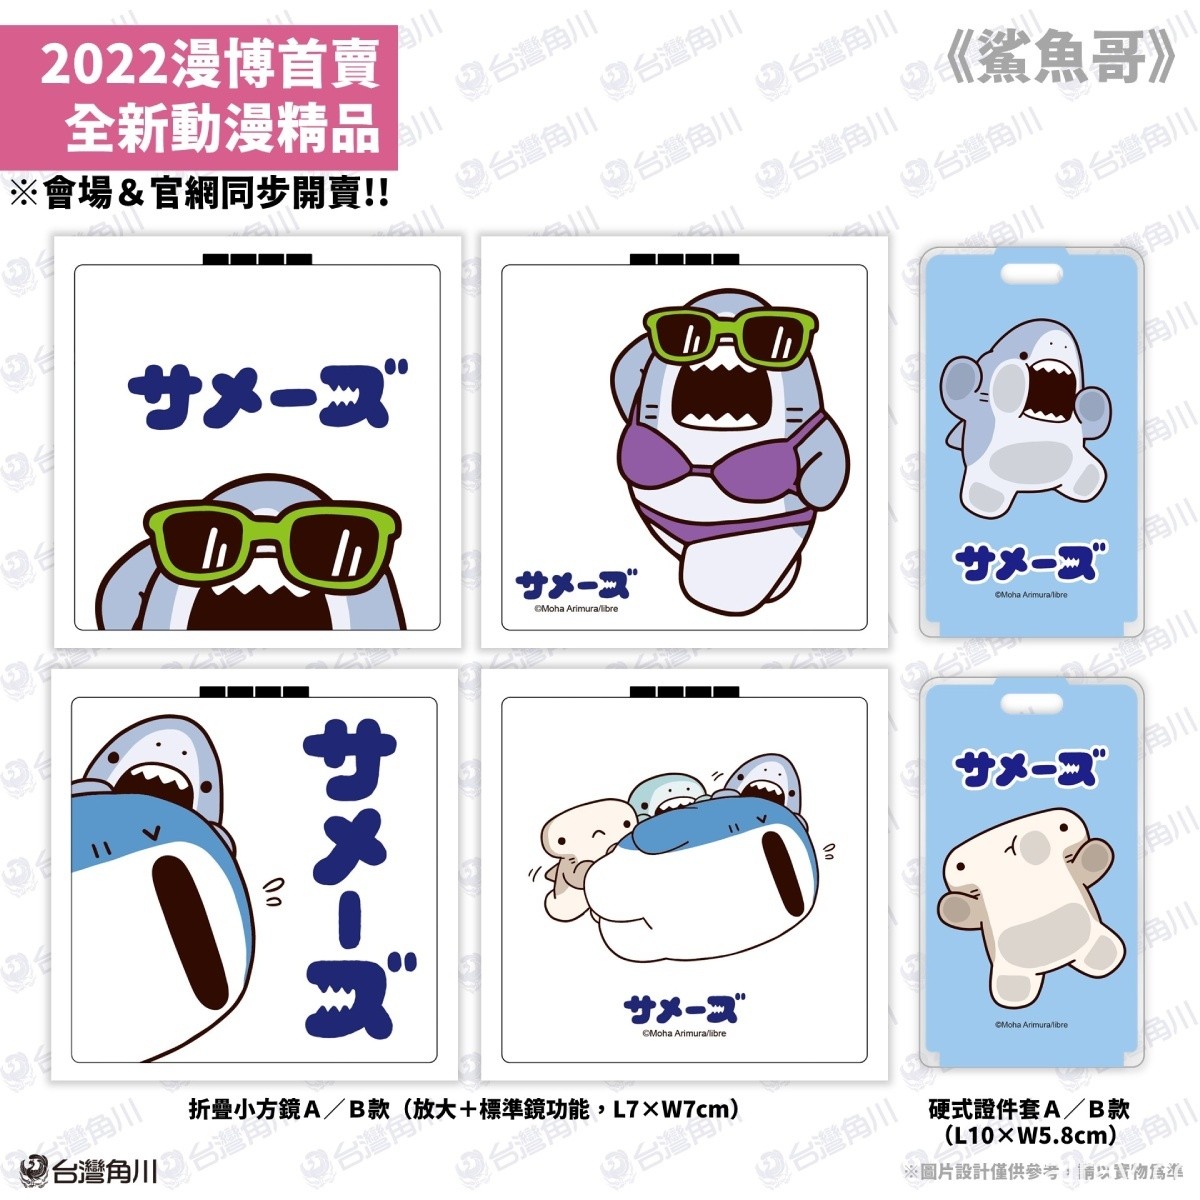 【漫博 22】台灣角川公開「2022 漫畫博覽會」動漫周邊商品資訊